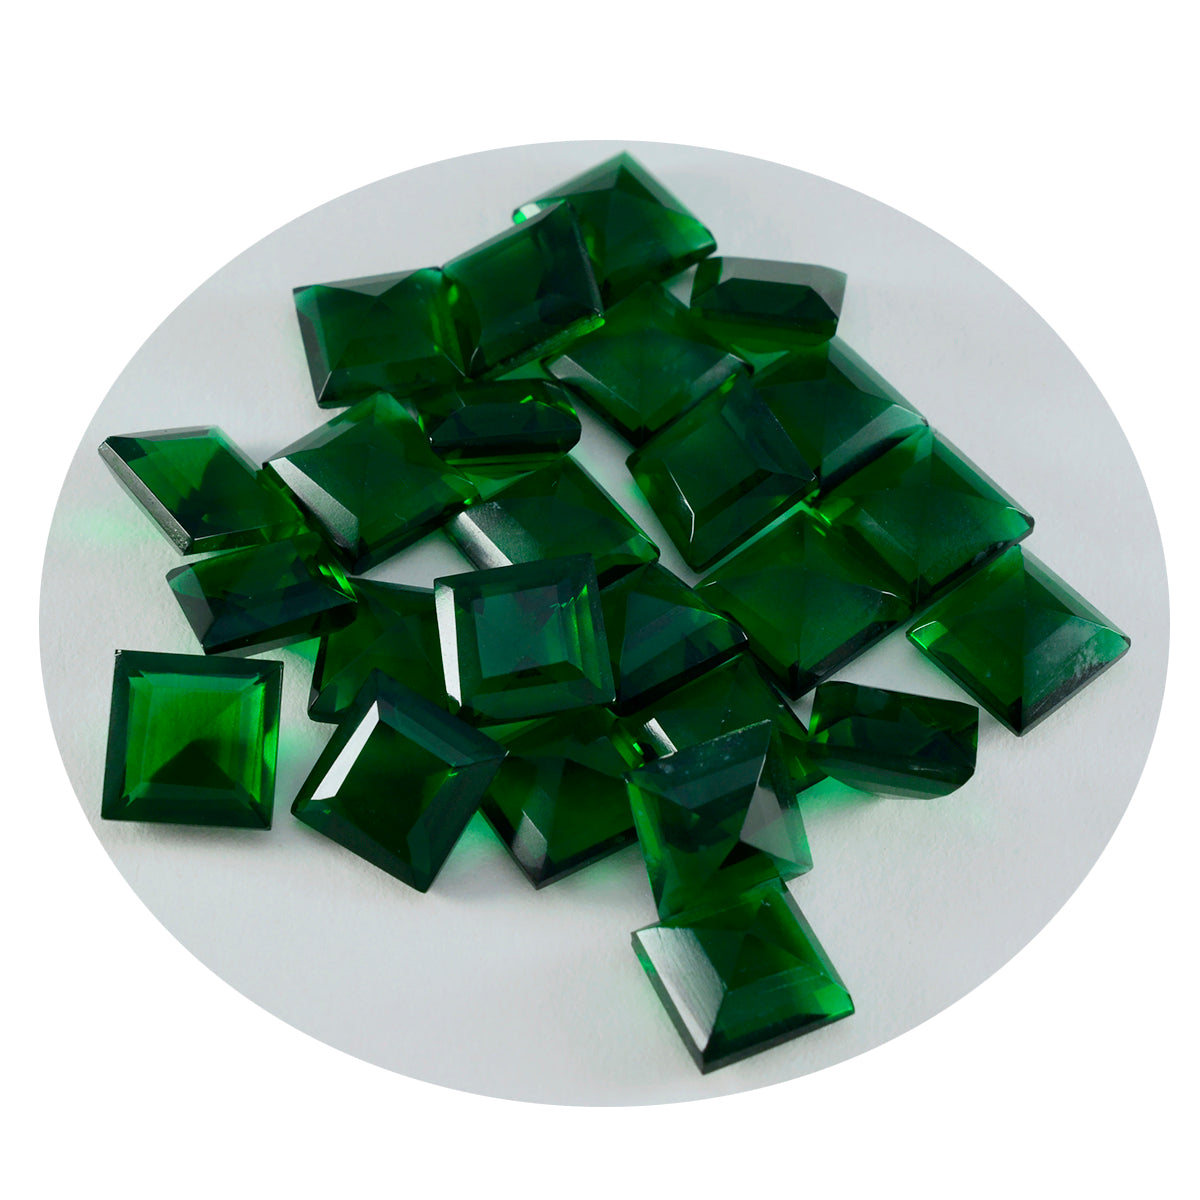 Riyogems 1 Stück grüner Smaragd mit CZ, facettiert, 9 x 9 mm, quadratische Form, Stein von erstaunlicher Qualität